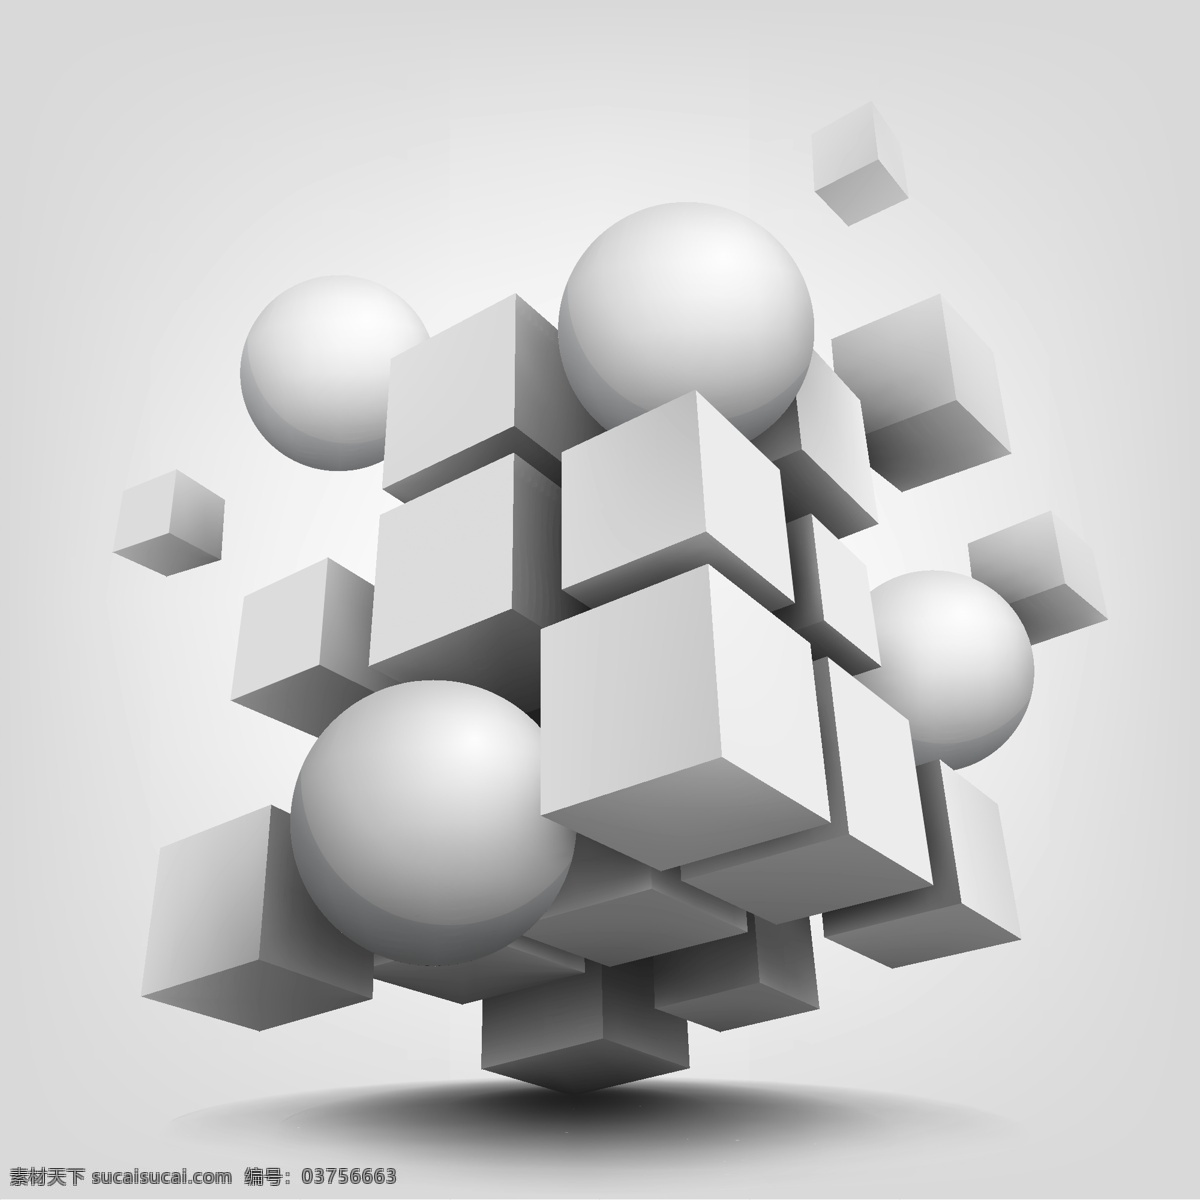 白色 3d 立体几何 元素 集合 矢量 素 蓝色方块 立体方块集合 现代图形 标志 建造 组成 商业 抽象 技术 企业概念 管理 立方体 几何砖结构 广告营销海报 三维 立体背景 3d设计